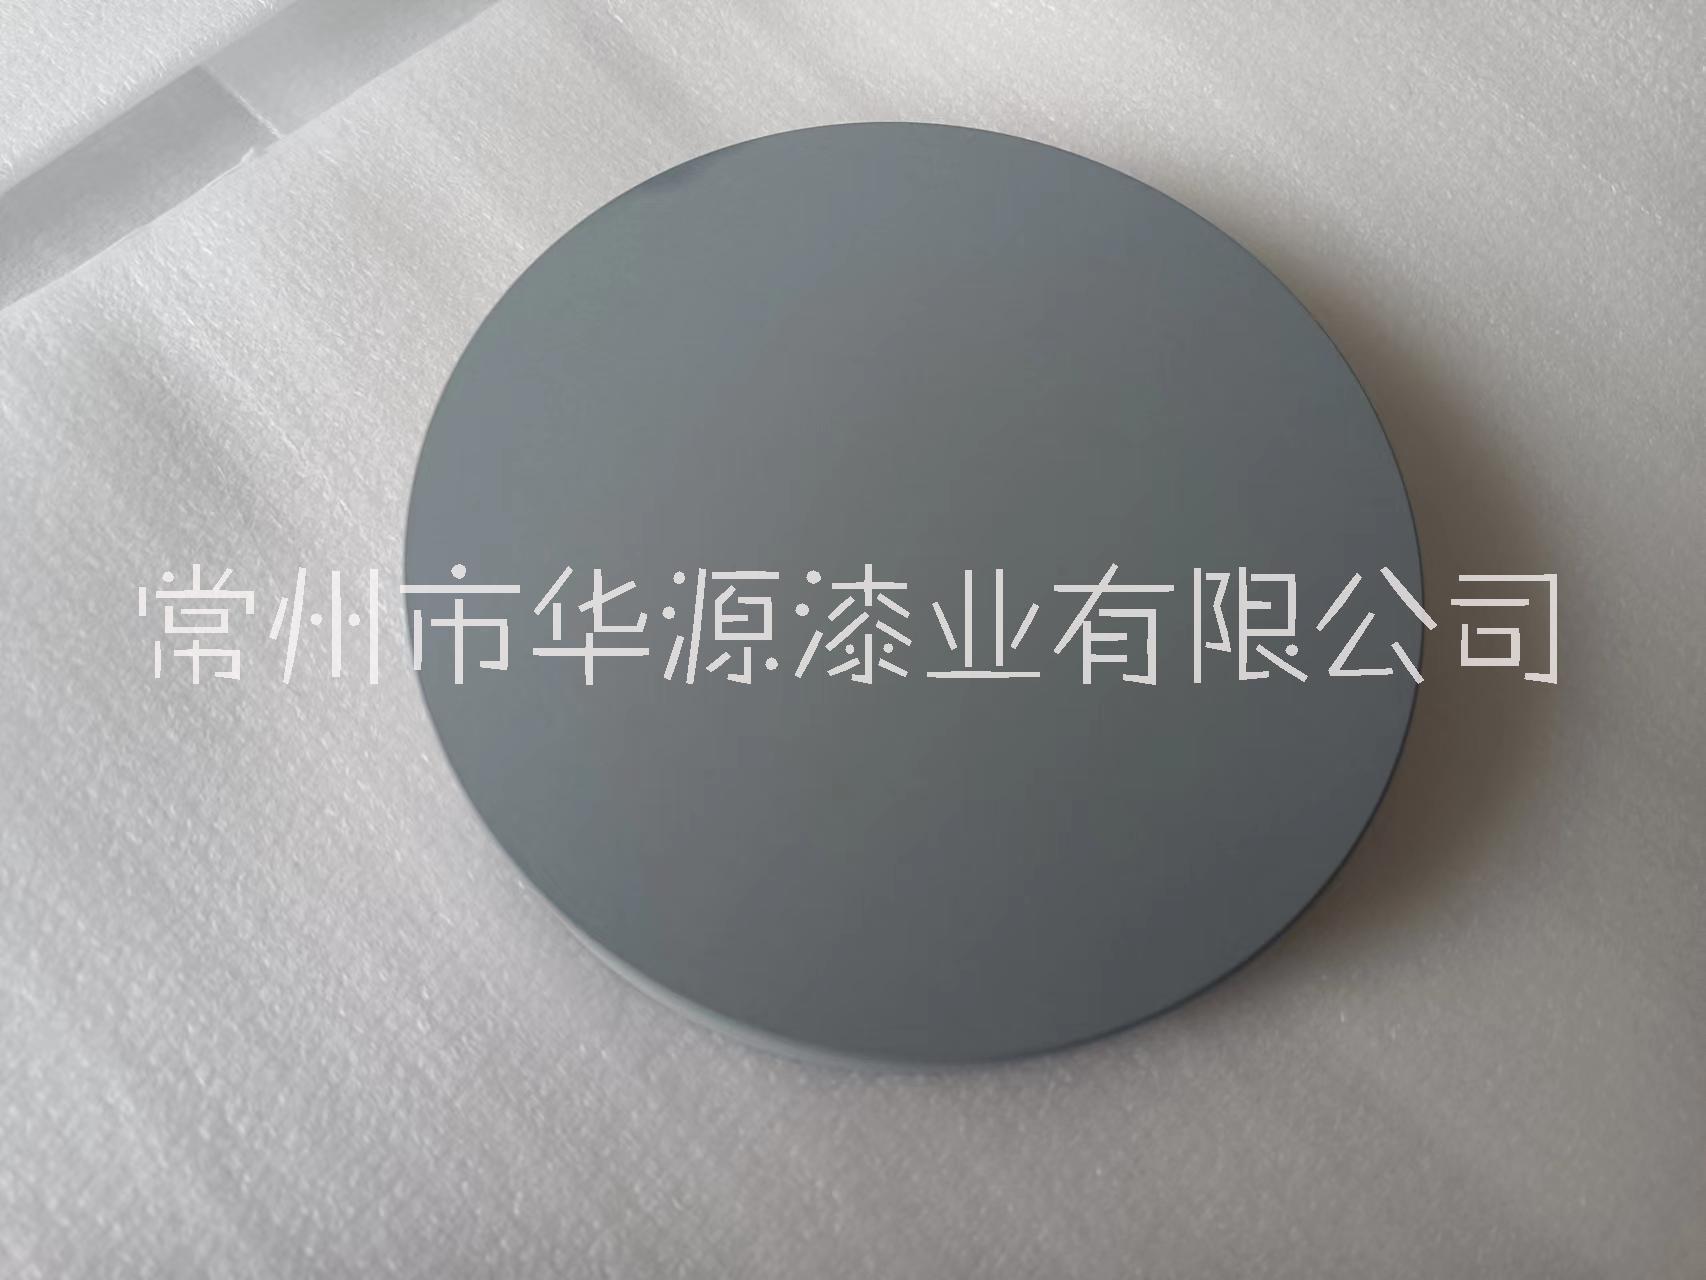 上海汽车铝合金加工、地址、电话【常州市华源漆业有限公司】